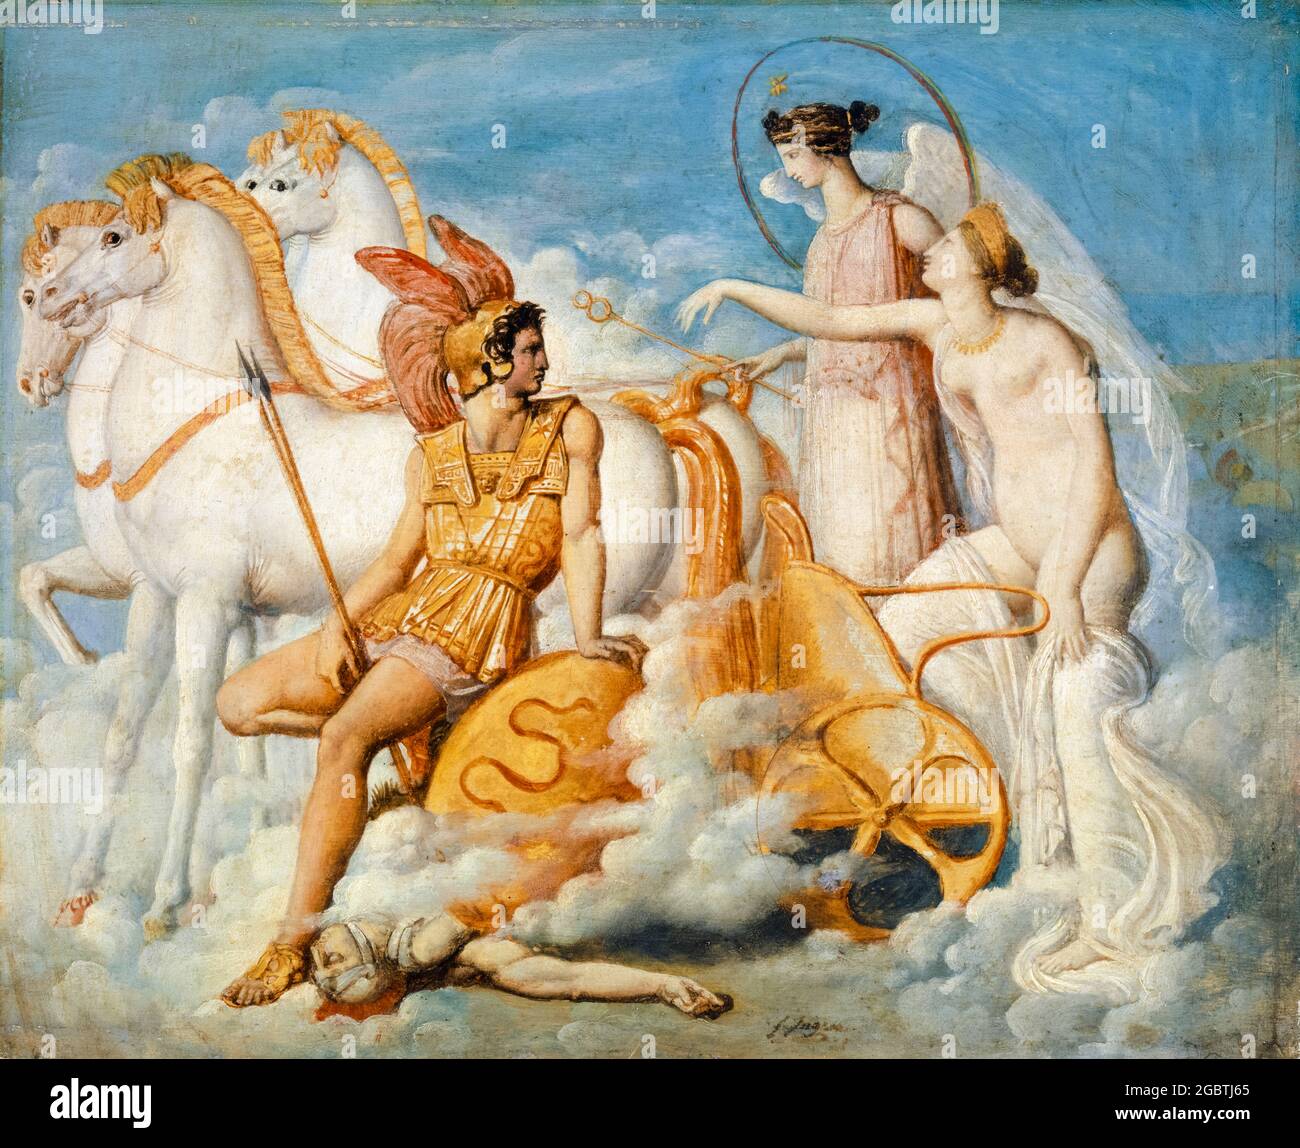 Vénus blessée par Diomedes remonte à Olympus, peinture de Jean Auguste Dominique Ingres, vers 1803 Banque D'Images